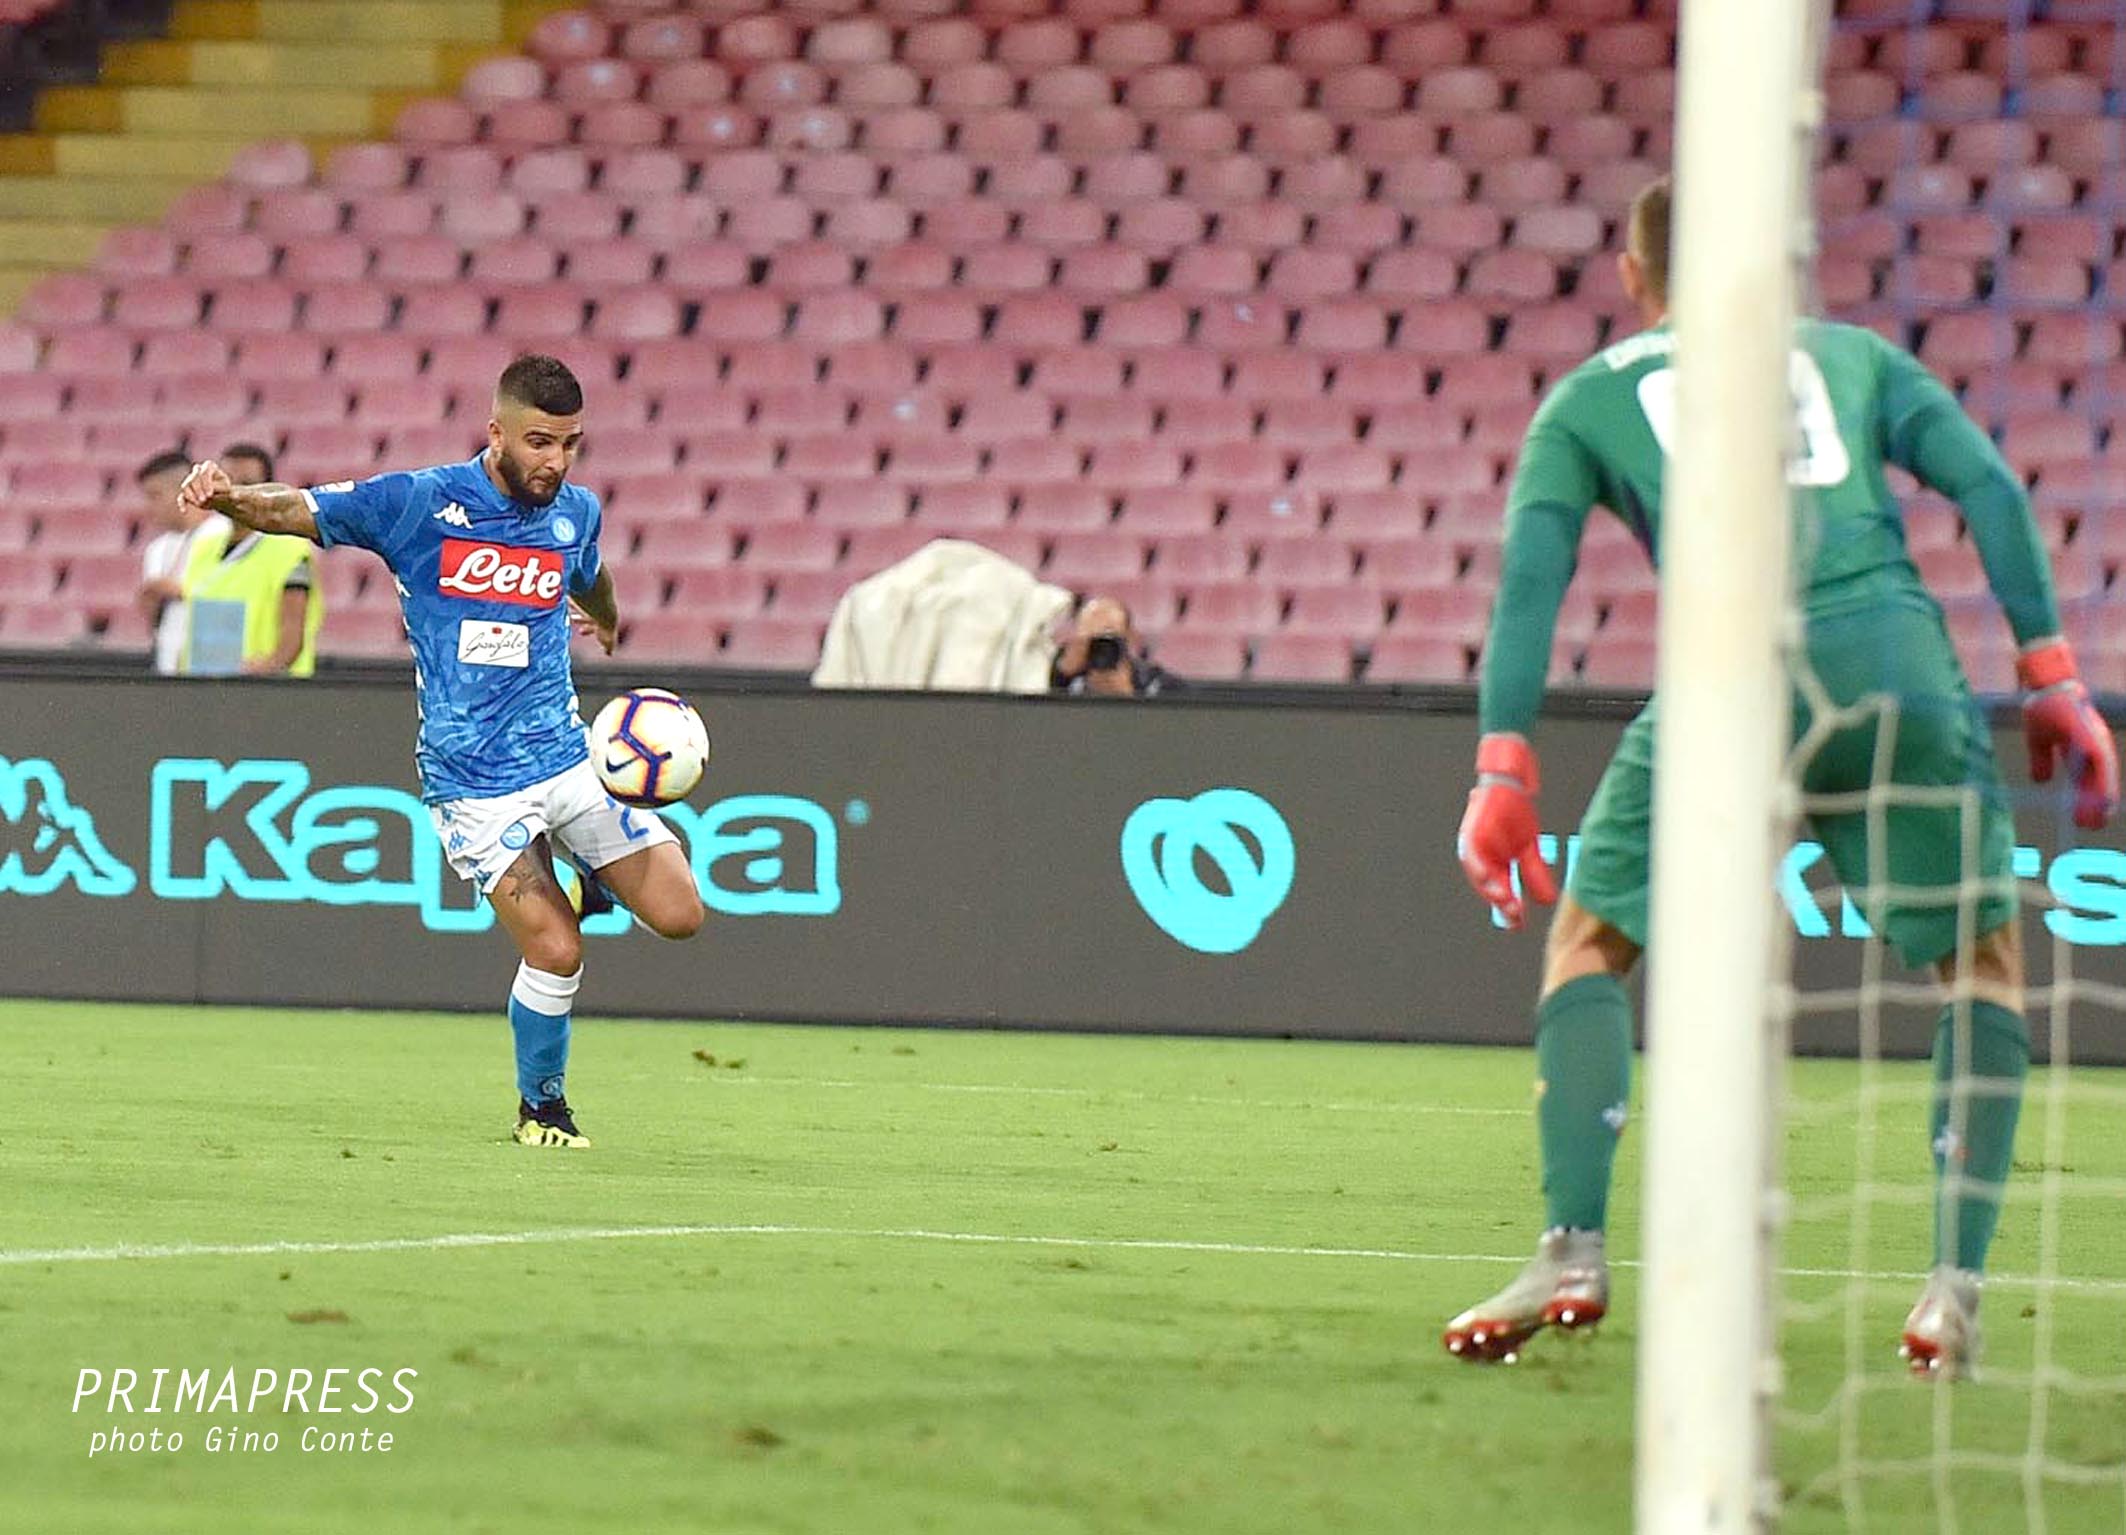 La vittoria del Napoli sulla Fiorentina raccontata dagli scatti di Gino Conte!